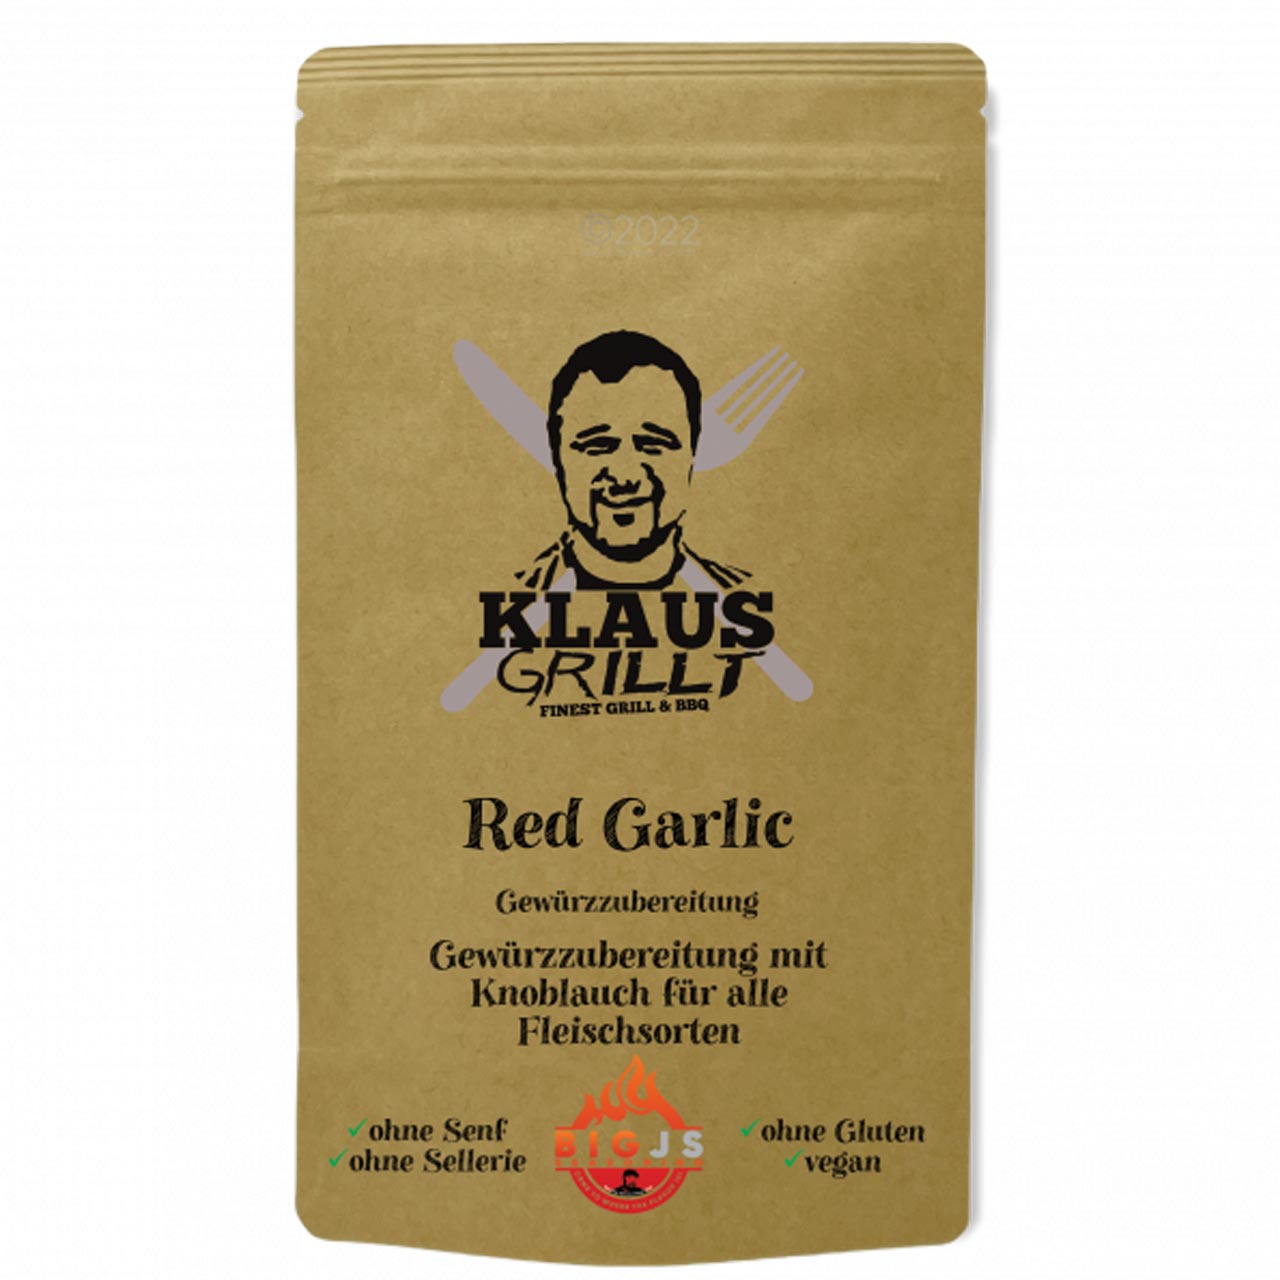 Klaus Grillt - Red Garlic Rub 250g Standbeutel